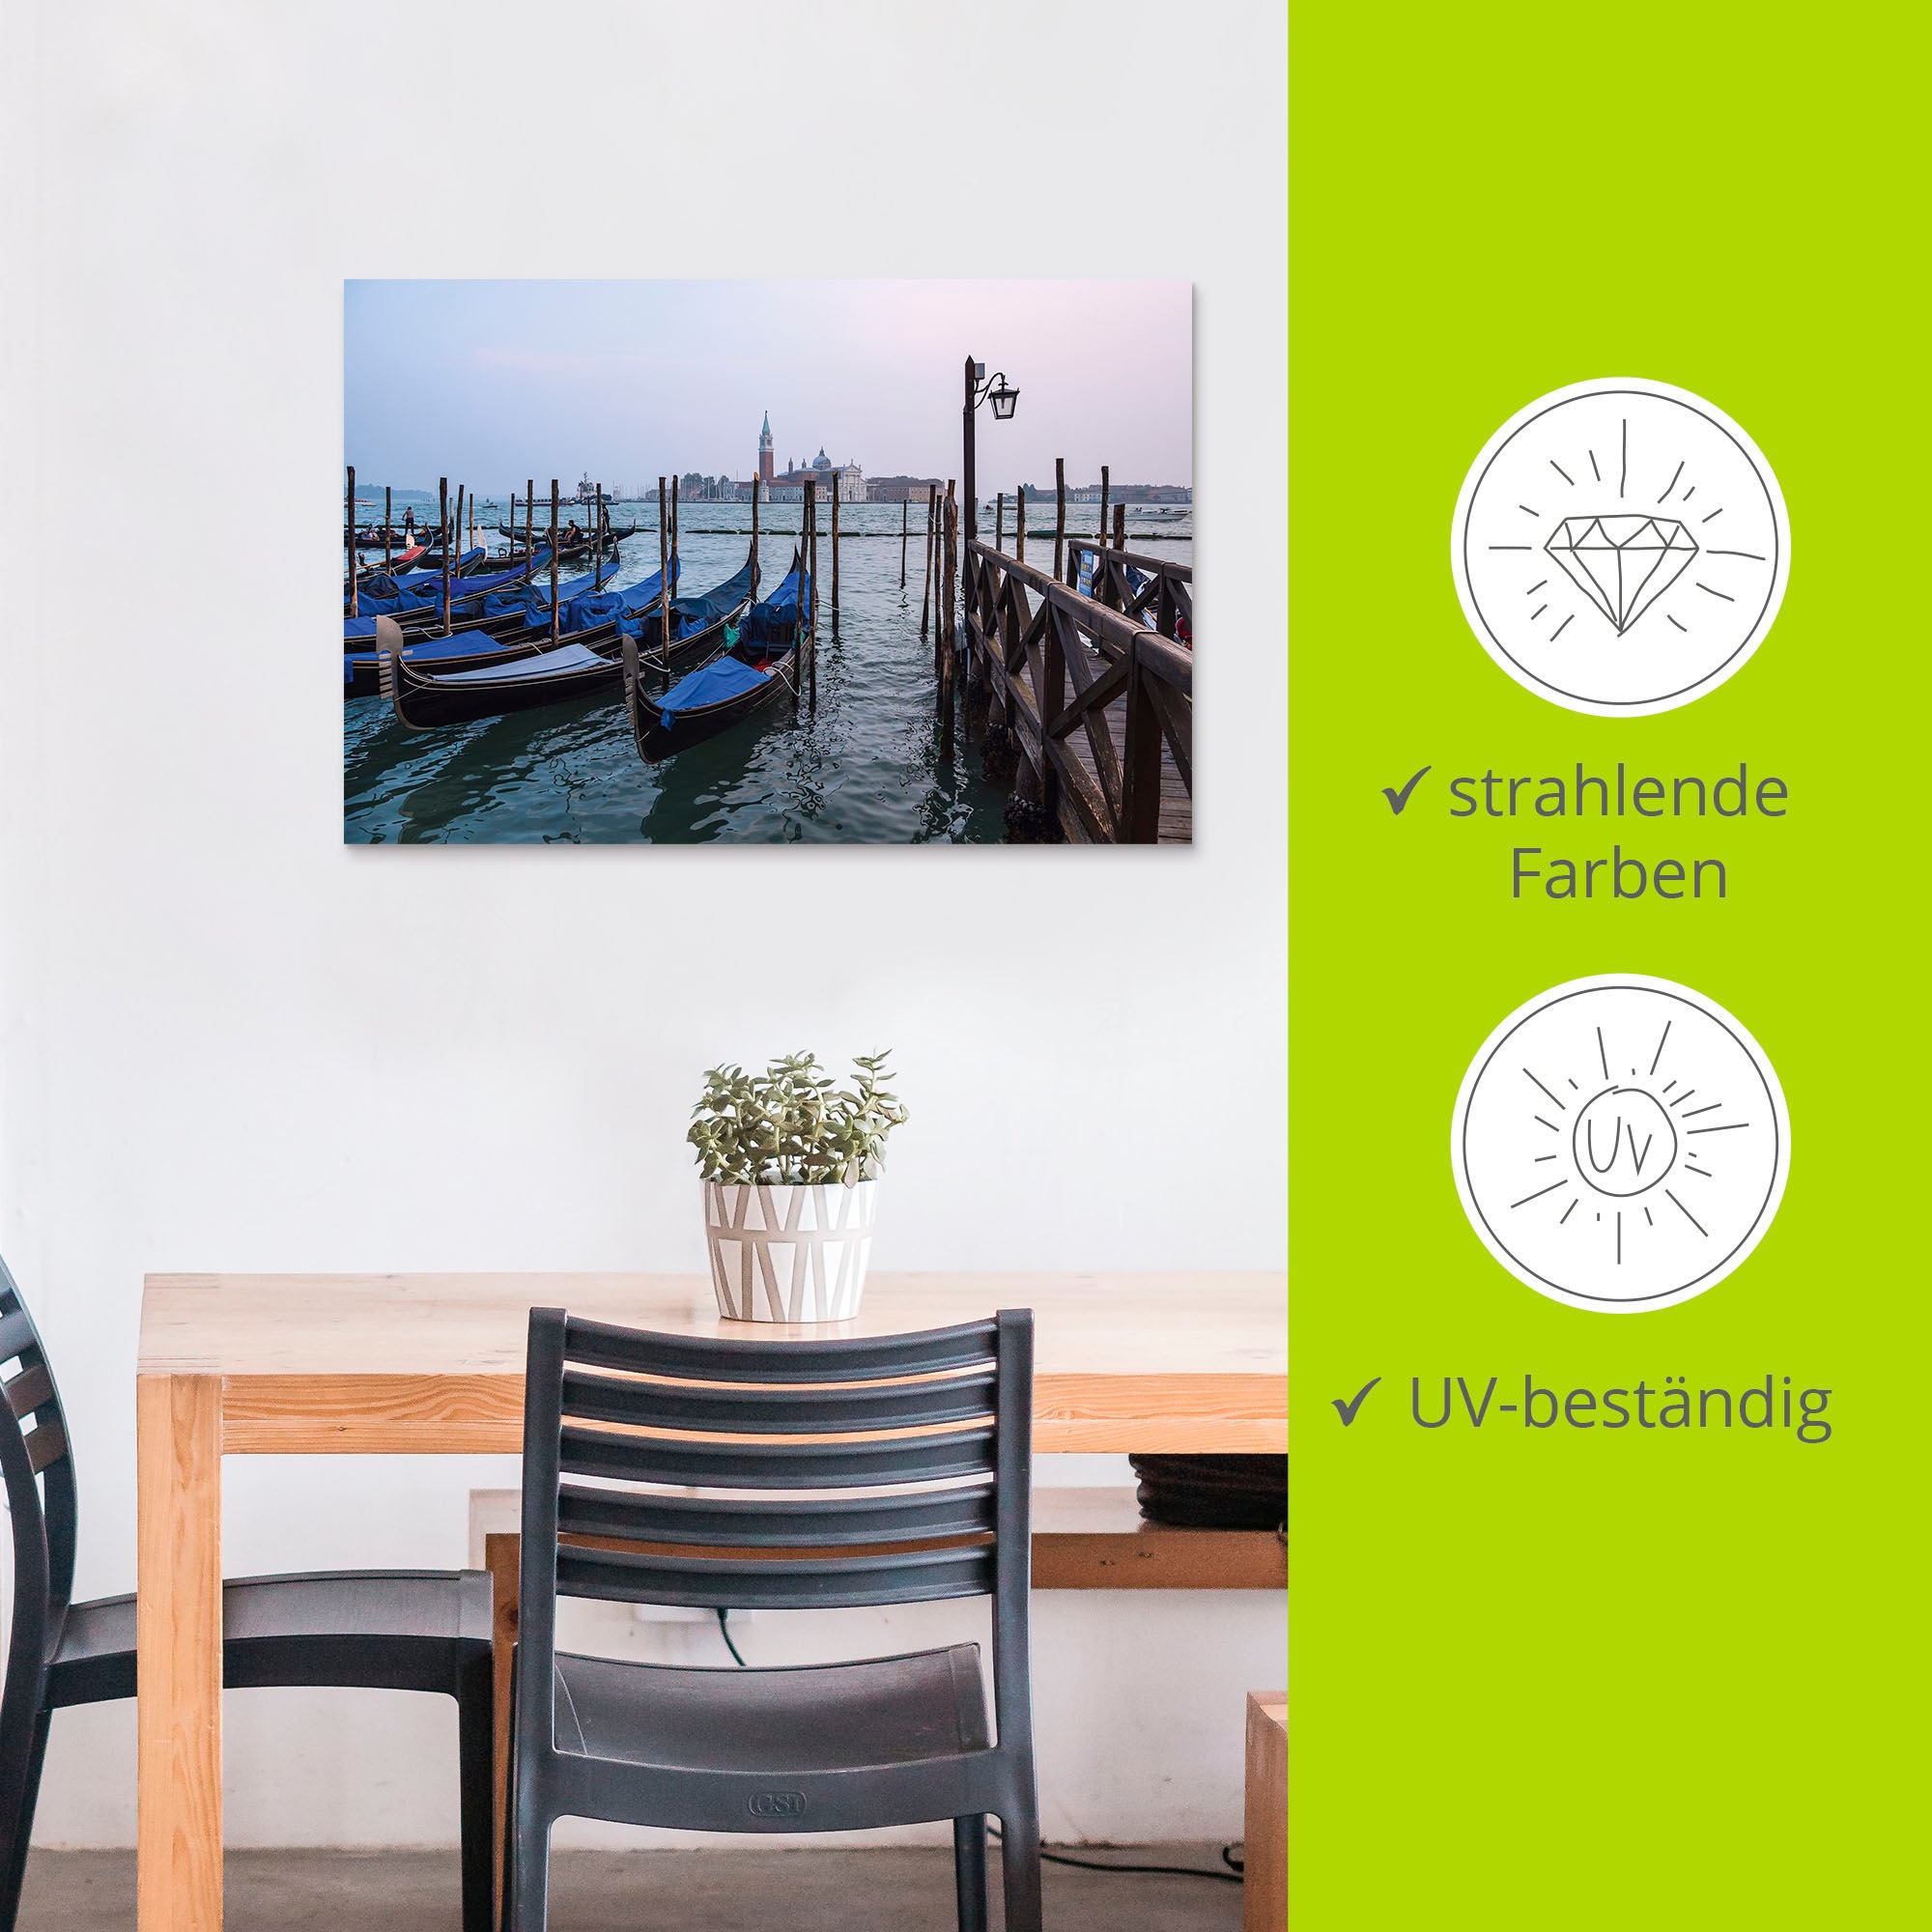 Artland Wandbild »Blick auf die Insel San Giorgio Maggiore«, Bilder von Booten & Schiffen, (1 St.), in vielen Größen & Produktarten , Alubild, Leinwandbild, Poster, Wandaufkleber